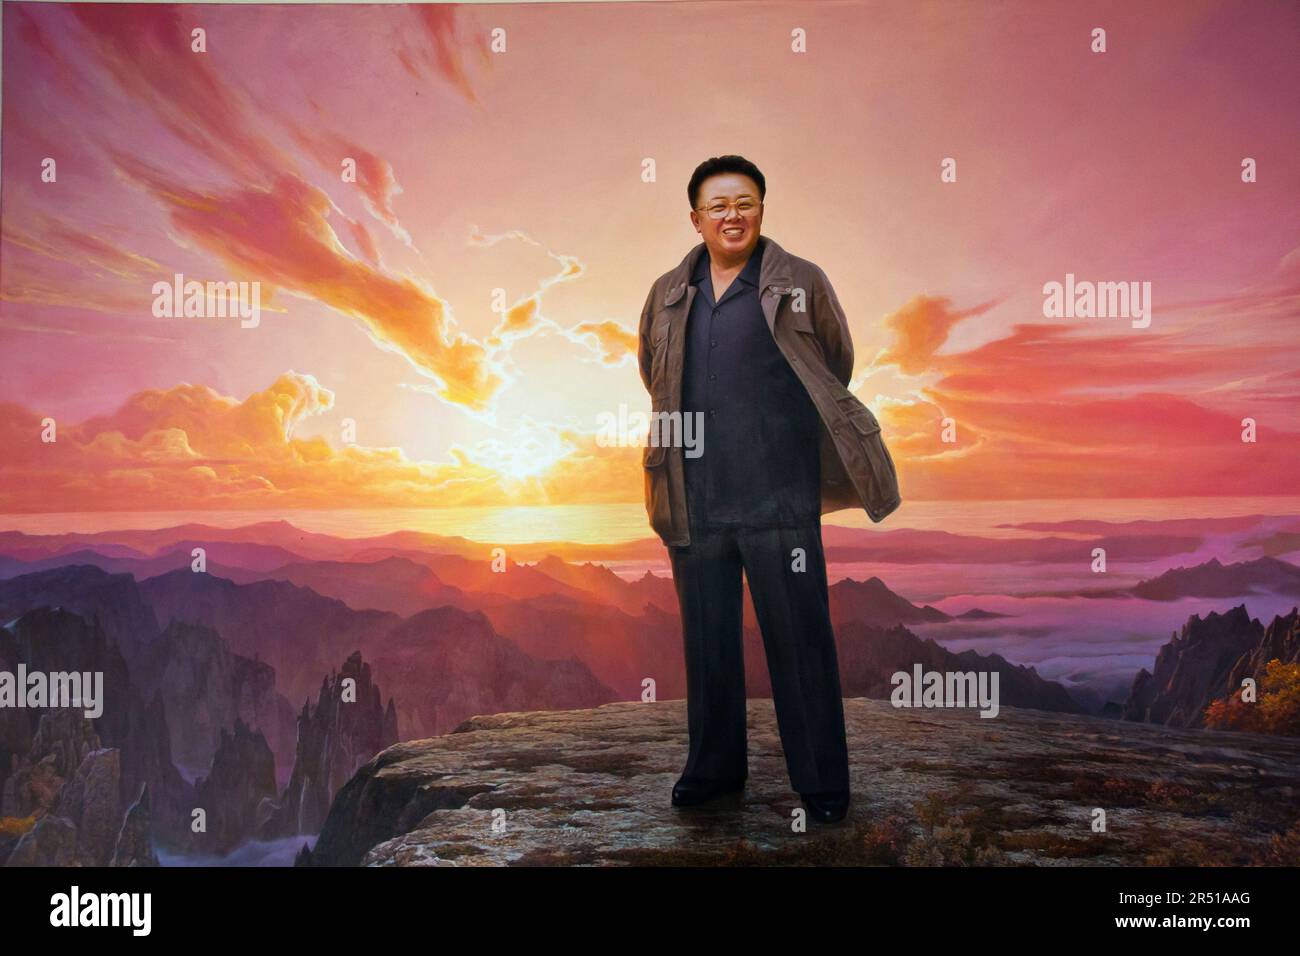 Image de propagande de Kim il chantait à Pyongyang, en Corée du Nord Banque D'Images